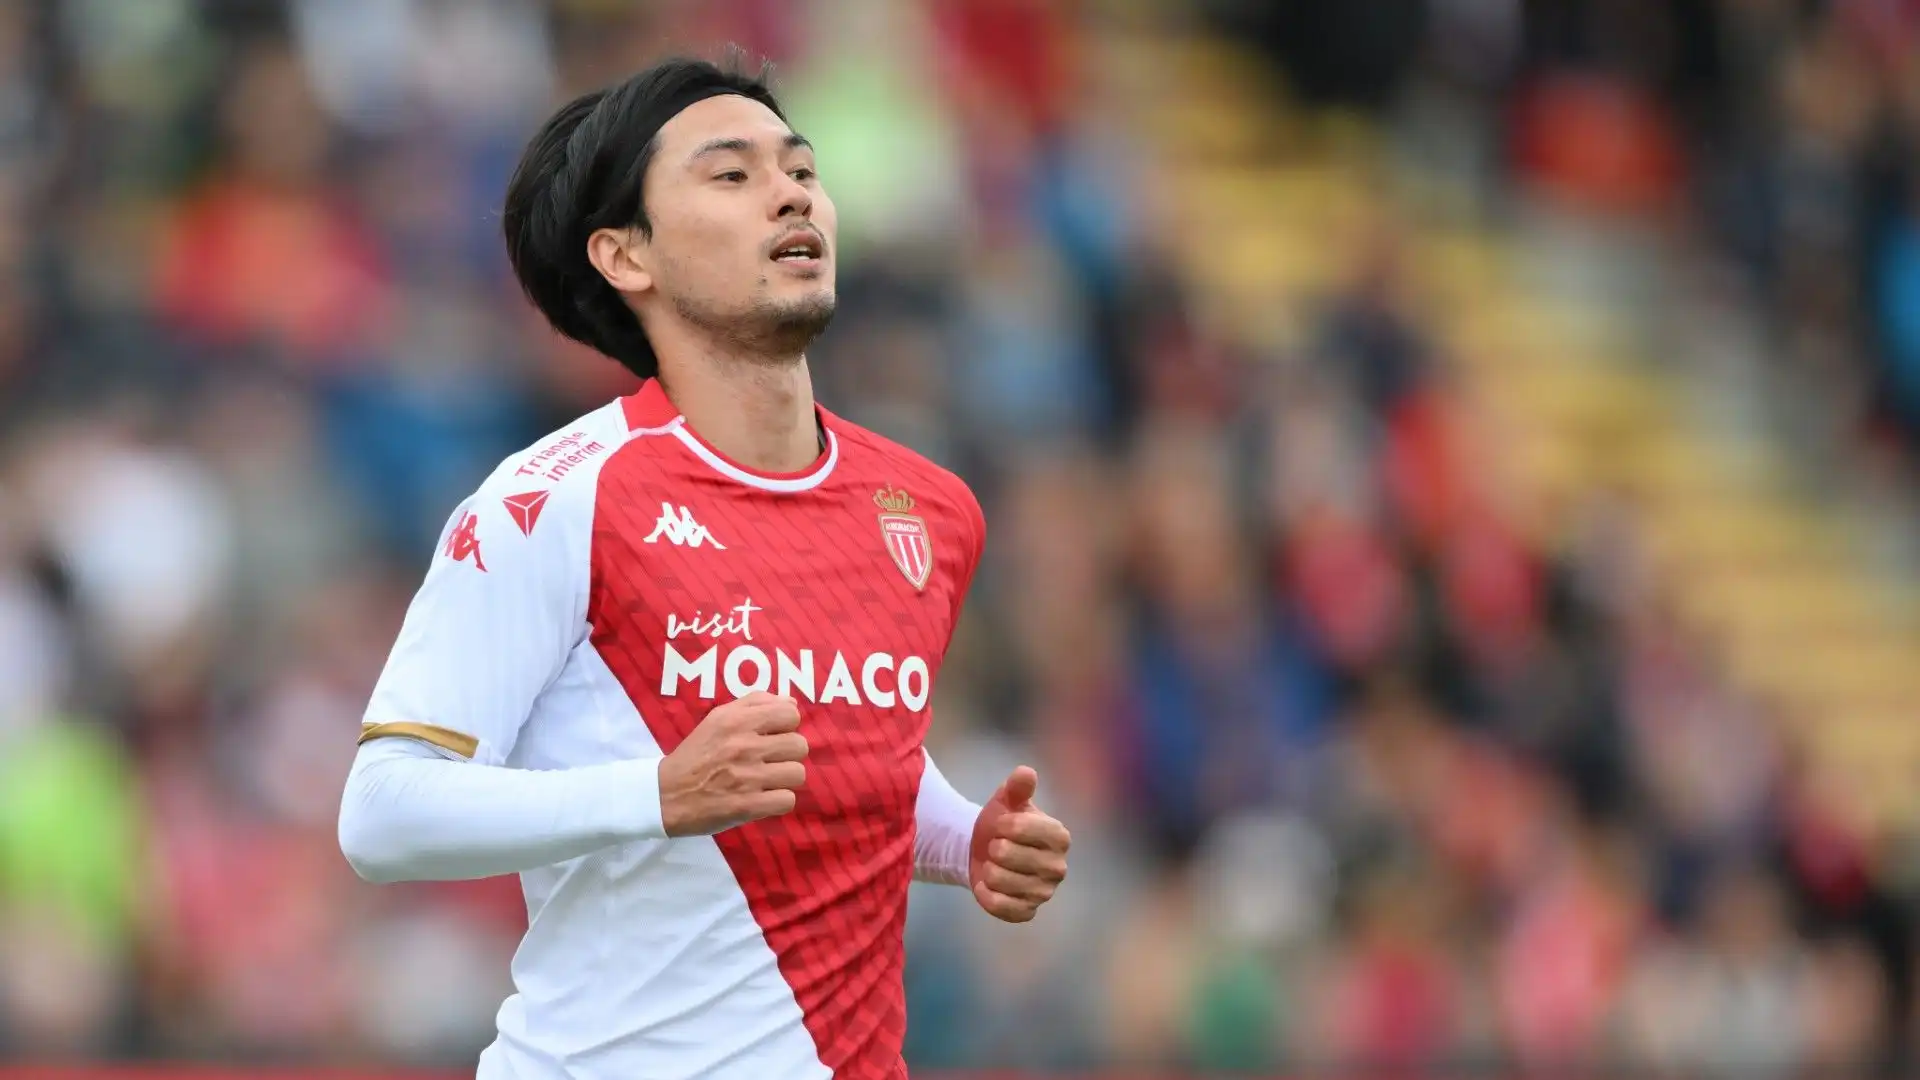 7- Nell'estate 2022 Takumi Minamino ha lasciato il Liverpool per giocare al Monaco. Costo del trasferimento: 15 milioni di euro